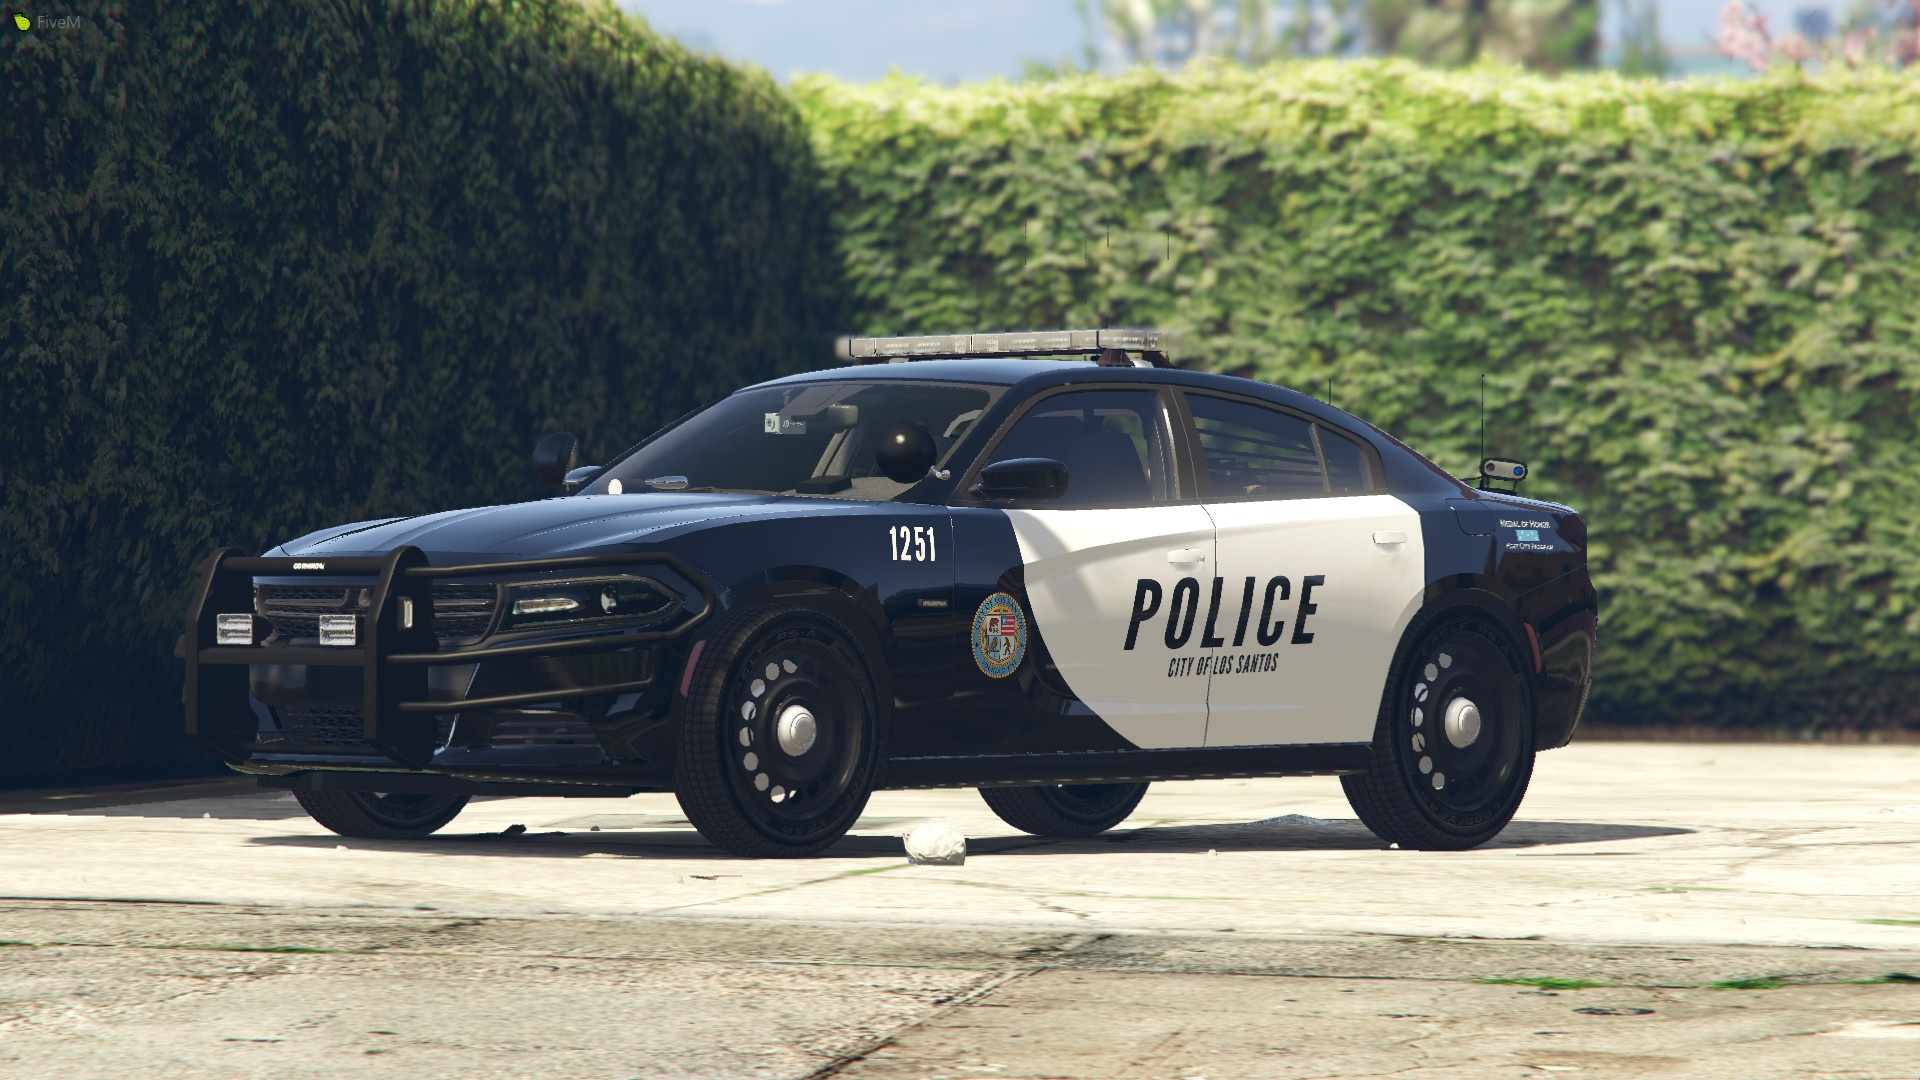 Police Interceptor Dodge Charger 2019.